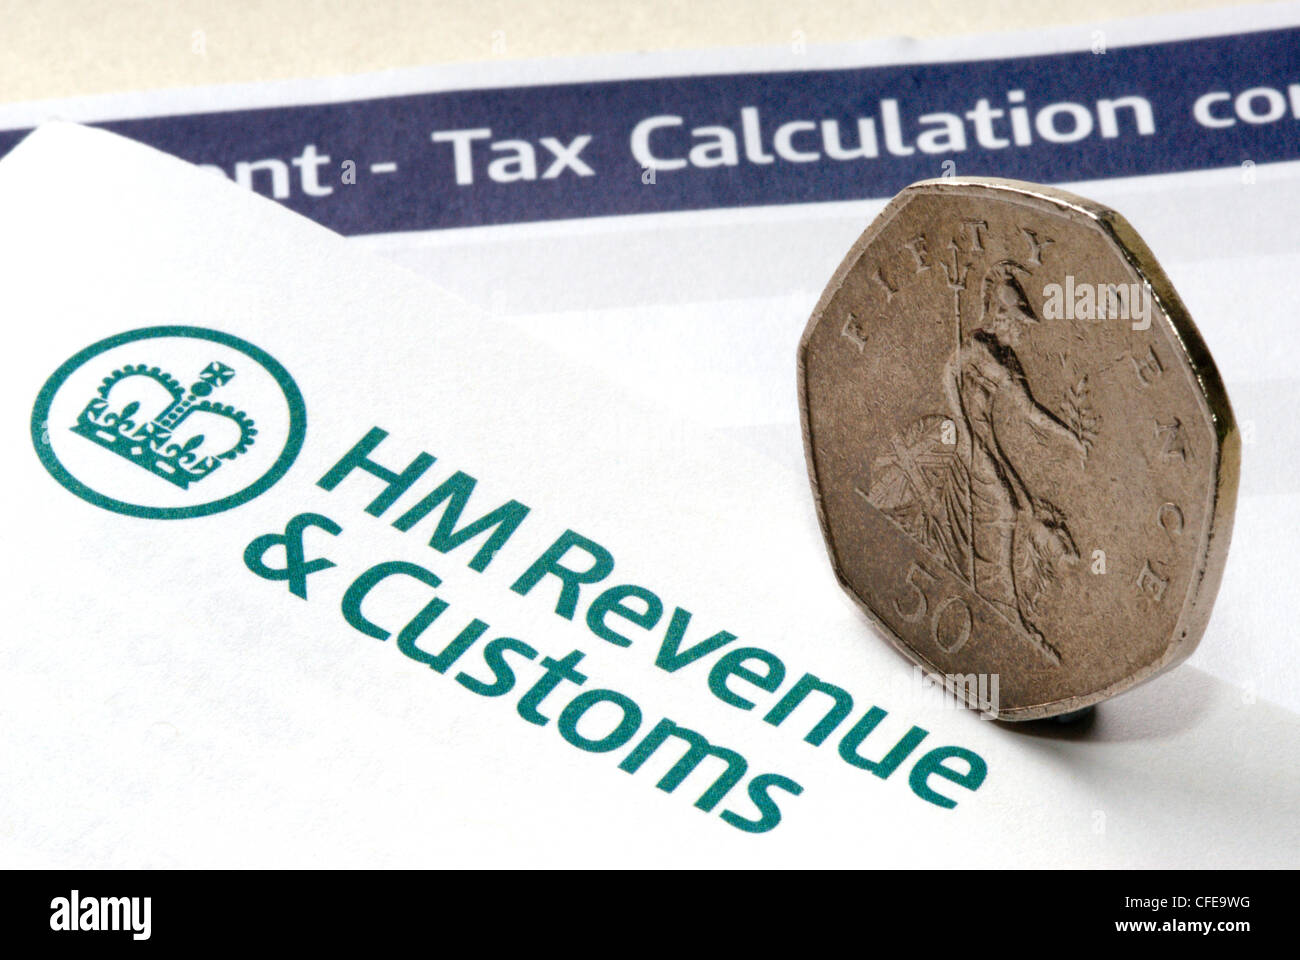 Allgemeines Bild von 50 Cent-Stück und das HMRC-Logo, um die fünfzig Pence Steuersatz zu veranschaulichen Stockfoto